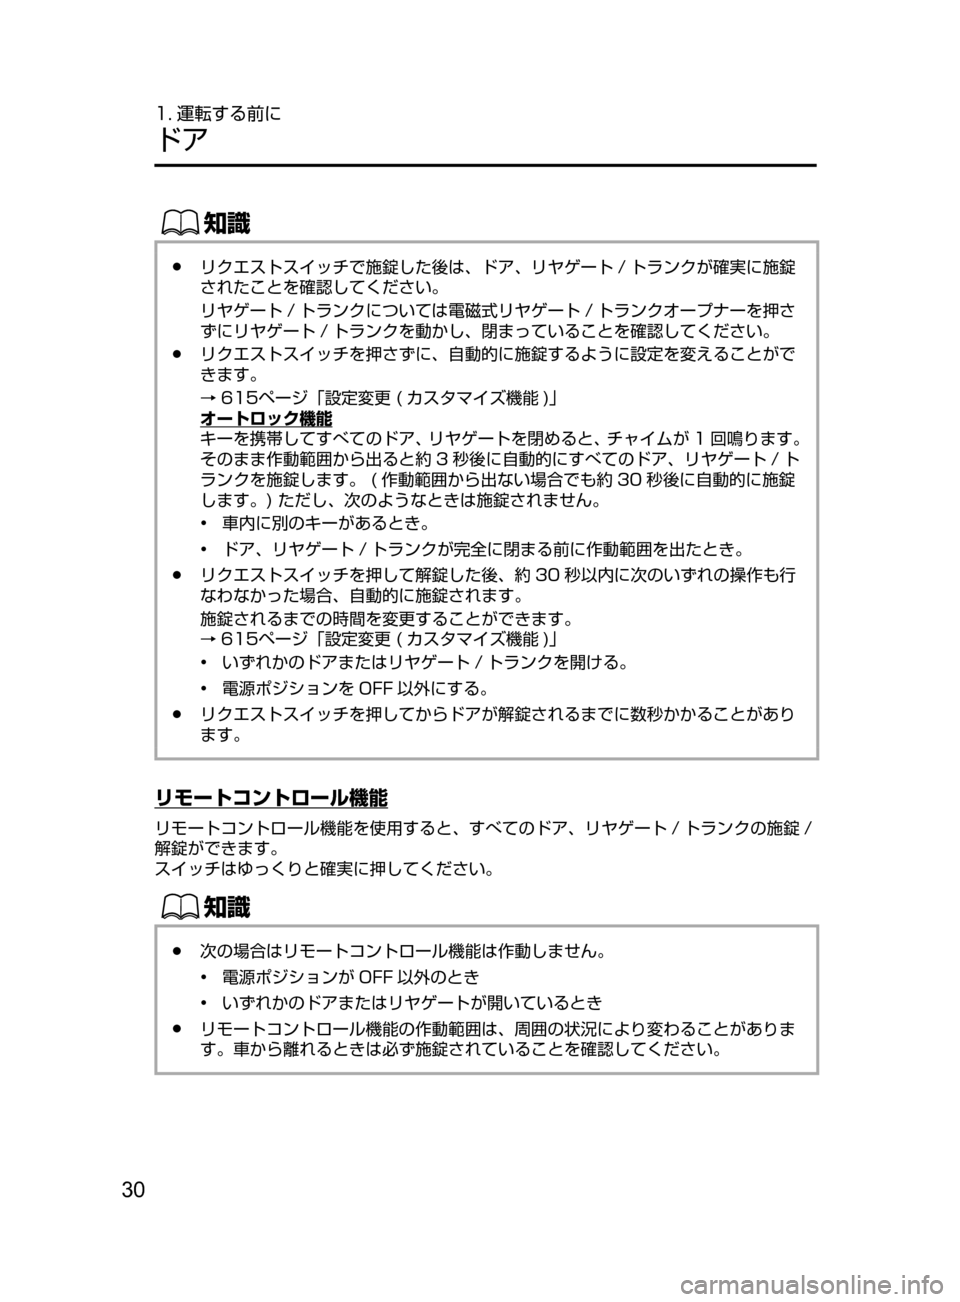 MAZDA MODEL ATENZA 2016  アテンザ｜取扱説明書 (in Japanese) 30
1. 運転する前に
ドア
ŒÝ
﻿﻿●リクエストスイッチで施錠した後は､ ドア､ リヤゲート / トランクが確実に施錠
されたことを確認してくださ�